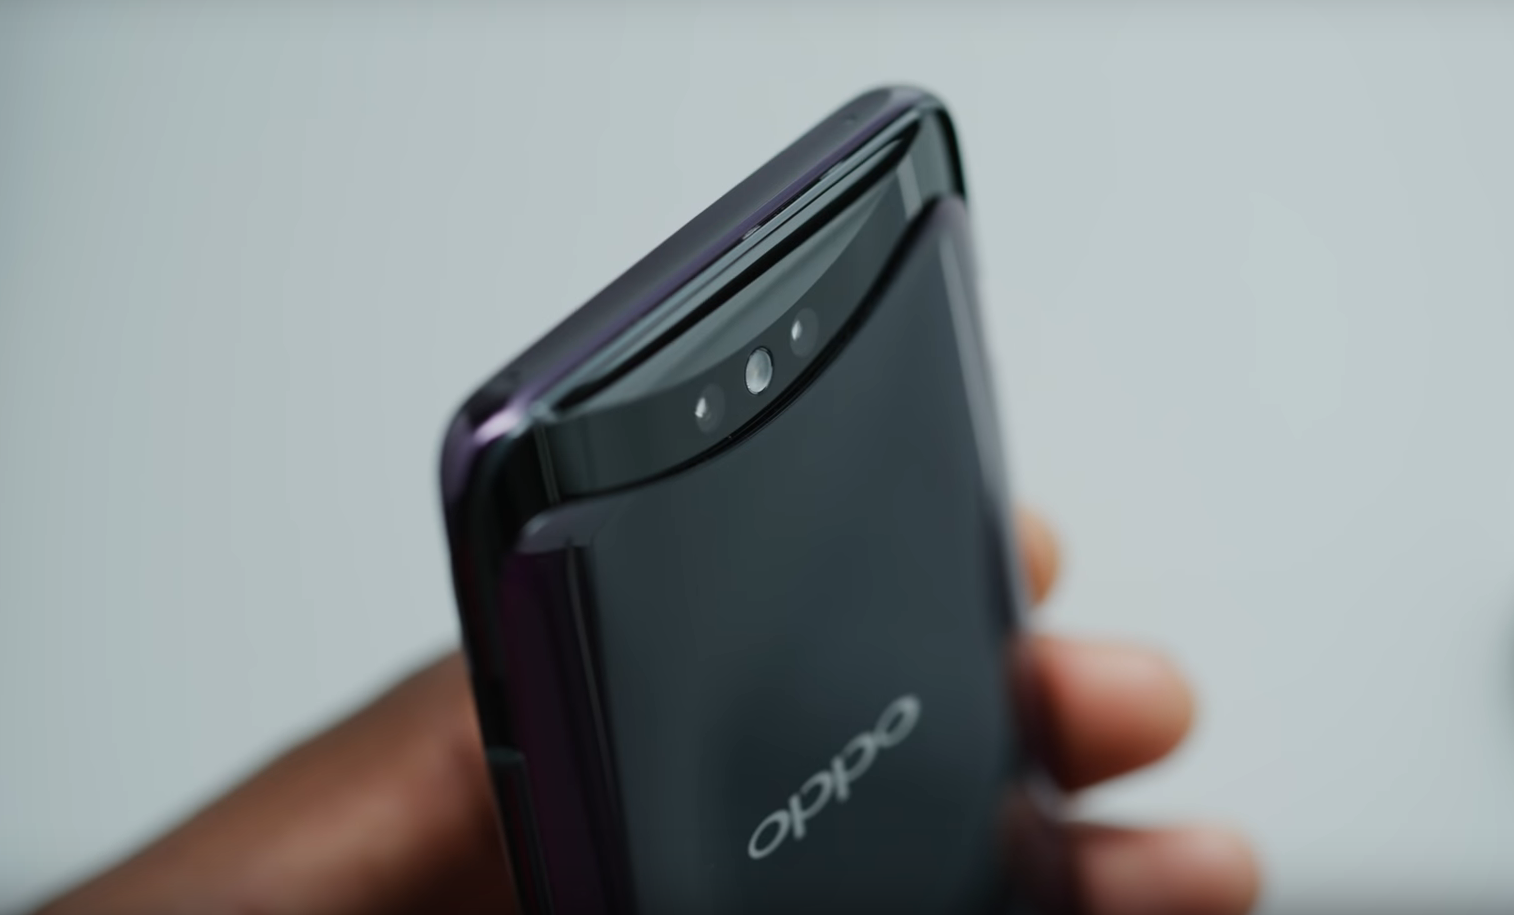 סקירה כללית של היתרונות והחסרונות של הטלפון החכם Oppo Find X